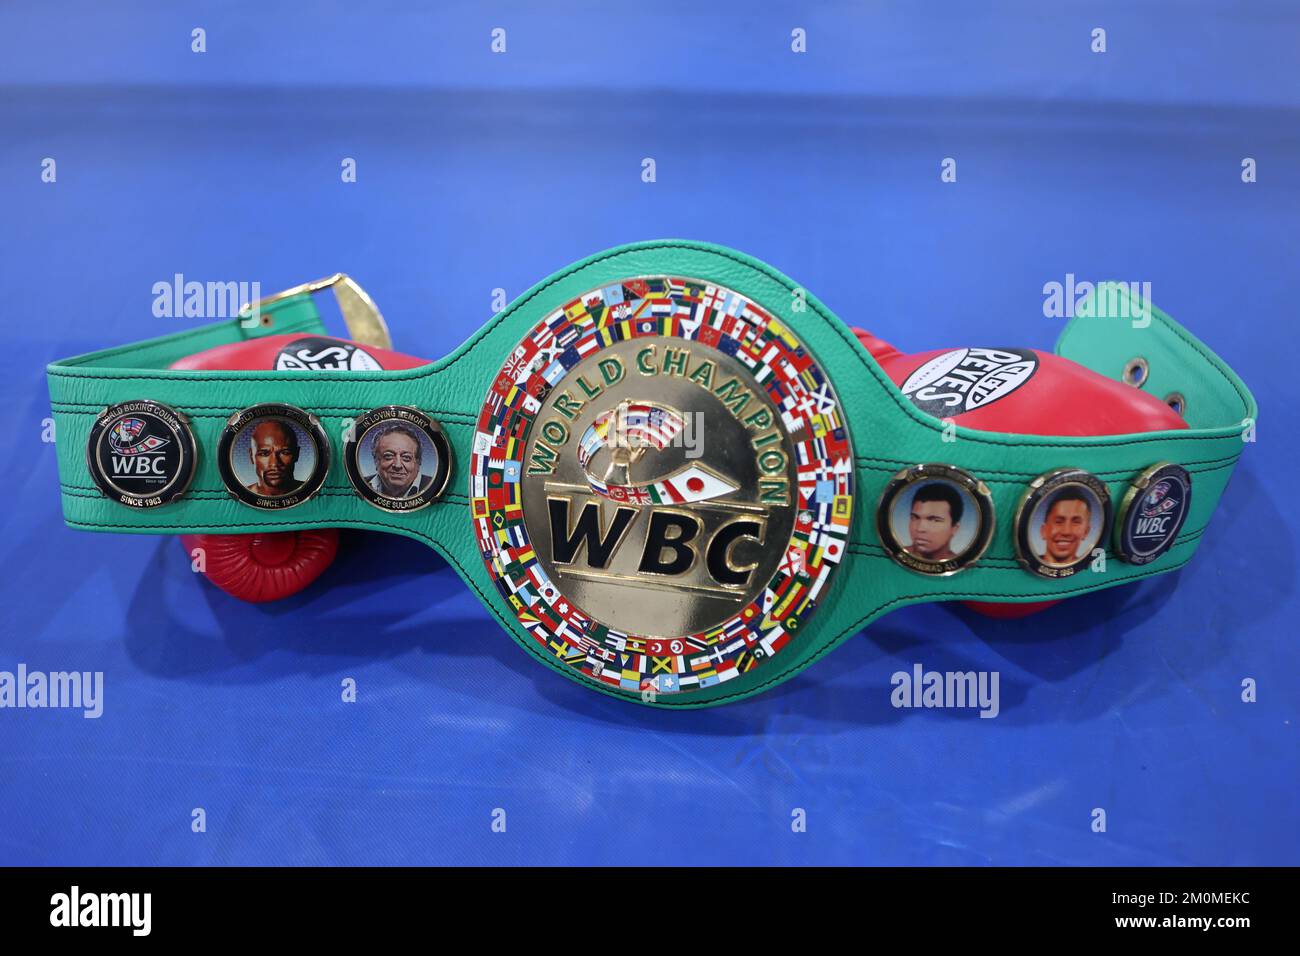 World champion belt immagini e fotografie stock ad alta risoluzione - Alamy